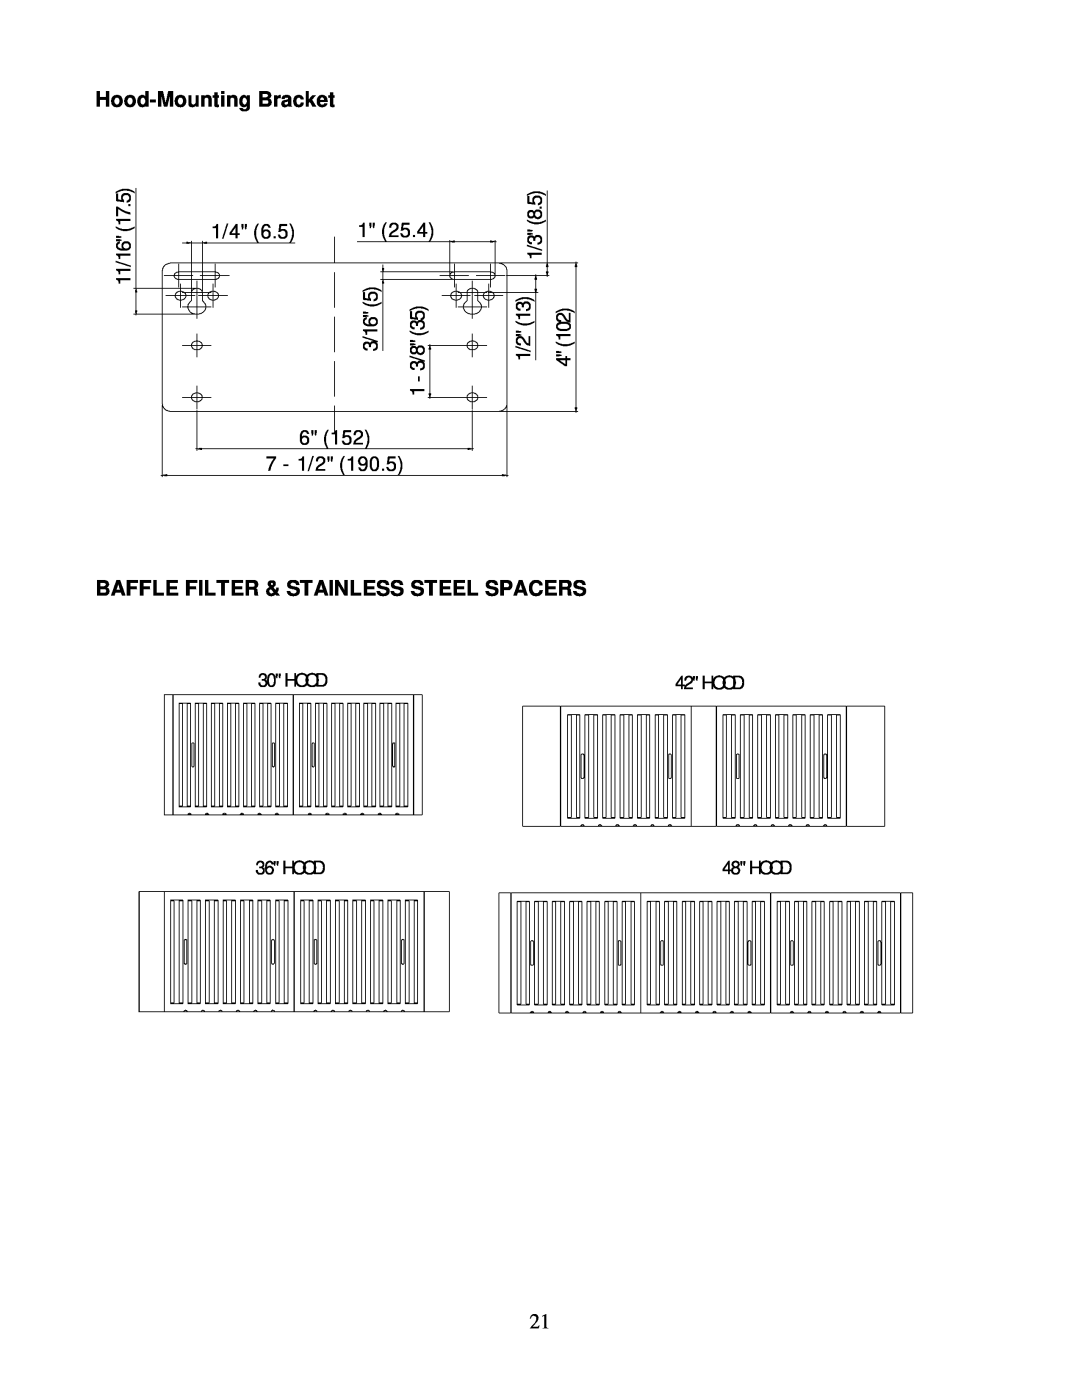 Kobe Range Hoods CH0036SQB (36"), CH0030SQB (30") manual Hood-Mounting Bracket, Baffle Filter & Stainless Steel Spacers 